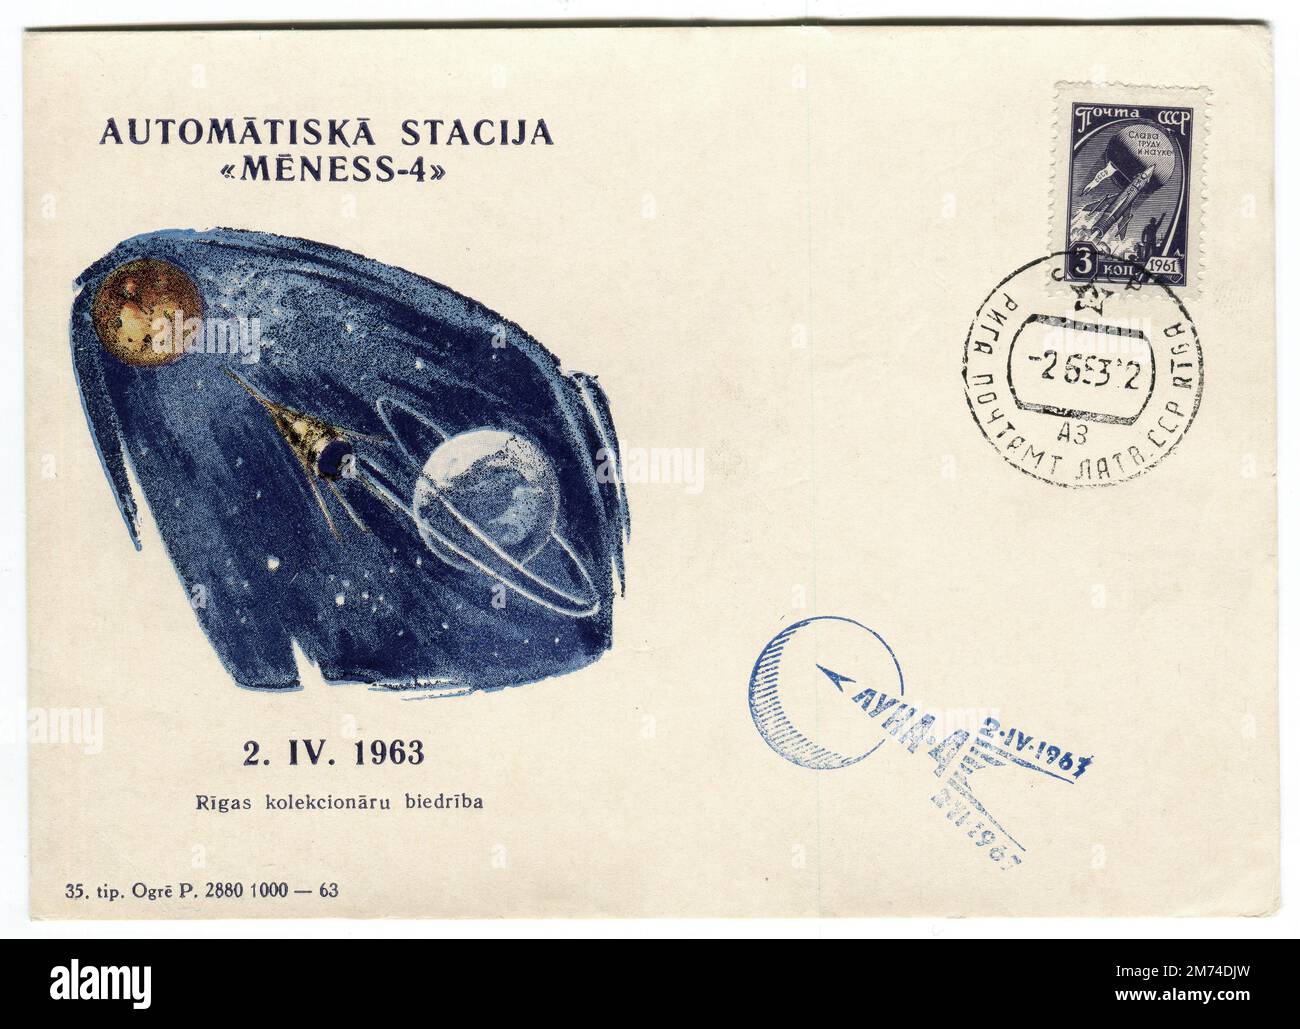 Une couverture spatiale russe soviétique d'époque publiée le 2 juin 1963 pour commémorer le vol de Mēness-4 (Luna 4). La couverture est ornée d'une image stylisée de l'engin spatial en direction de la lune et de la légende traduite qui l'accompagne, « Comptabilité pour les États-Unis Luna-4 ». En concurrence avec le programme spatial Apollo des États-Unis, Luna 4 ou E-6 No.4 était un vaisseau spatial soviétique lancé dans le cadre du programme Luna pour tenter le premier atterrissage en douceur sur la Lune. L'engin spatial n'a pas effectué de correction de trajectoire et, par conséquent, il a manqué la Lune, restant plutôt en orbite terrestre. Banque D'Images